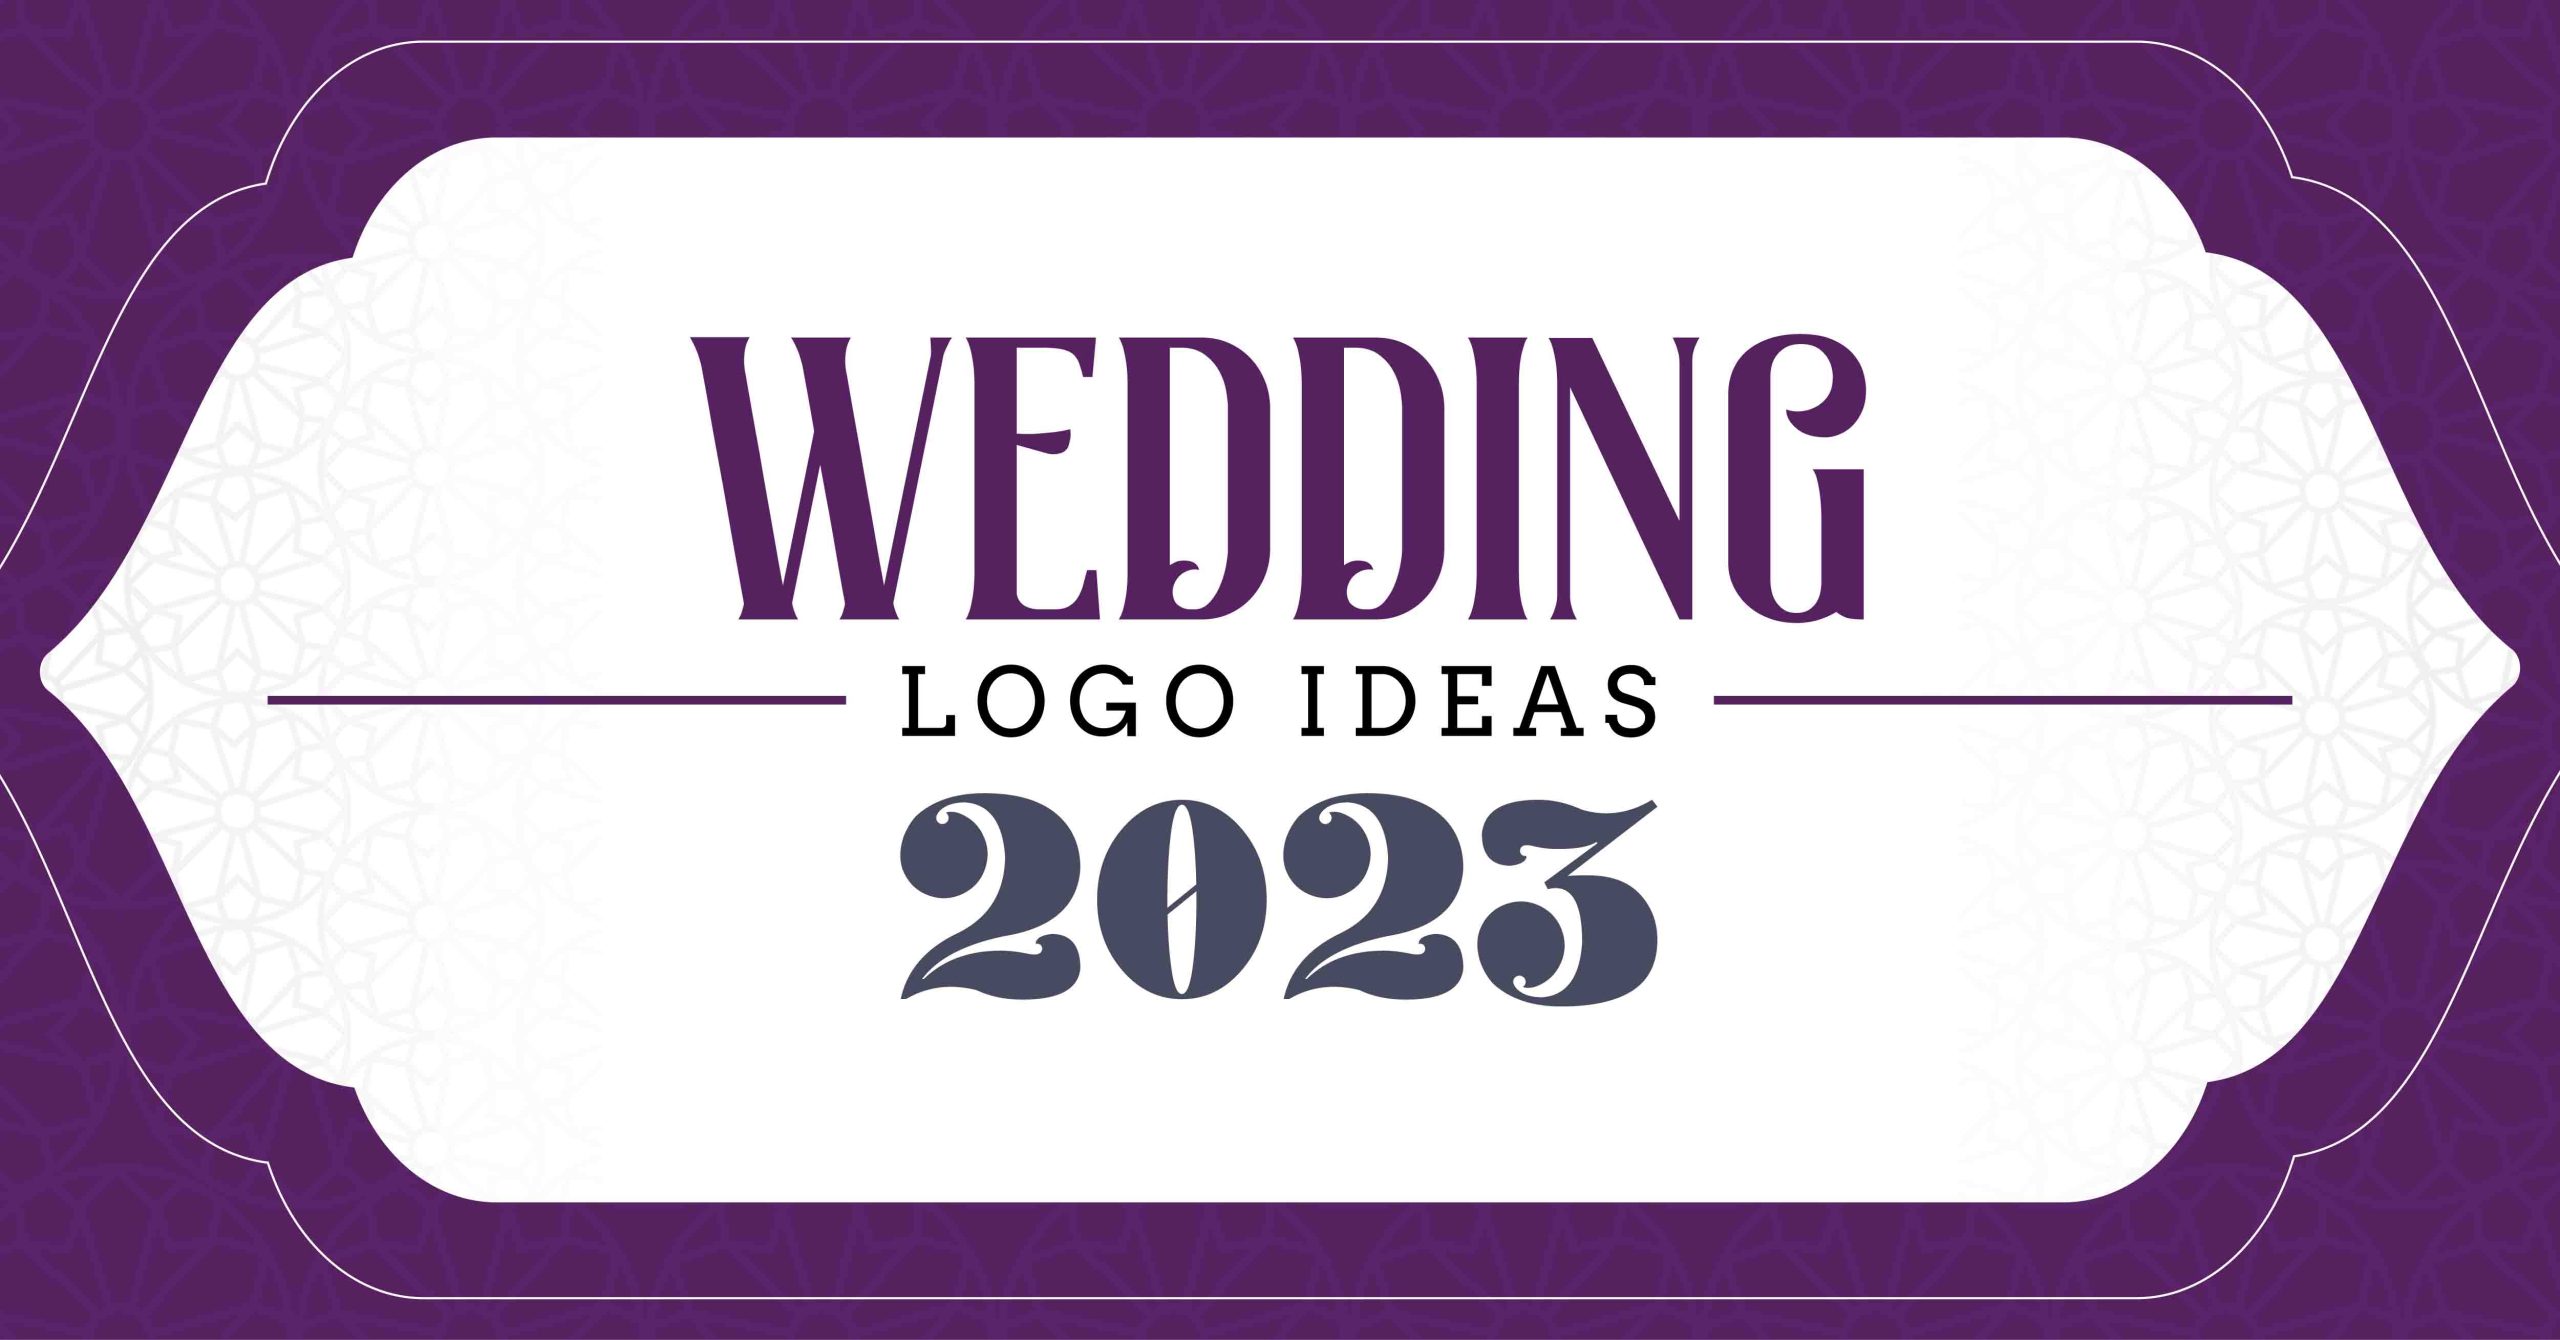 Wedding logo ideas